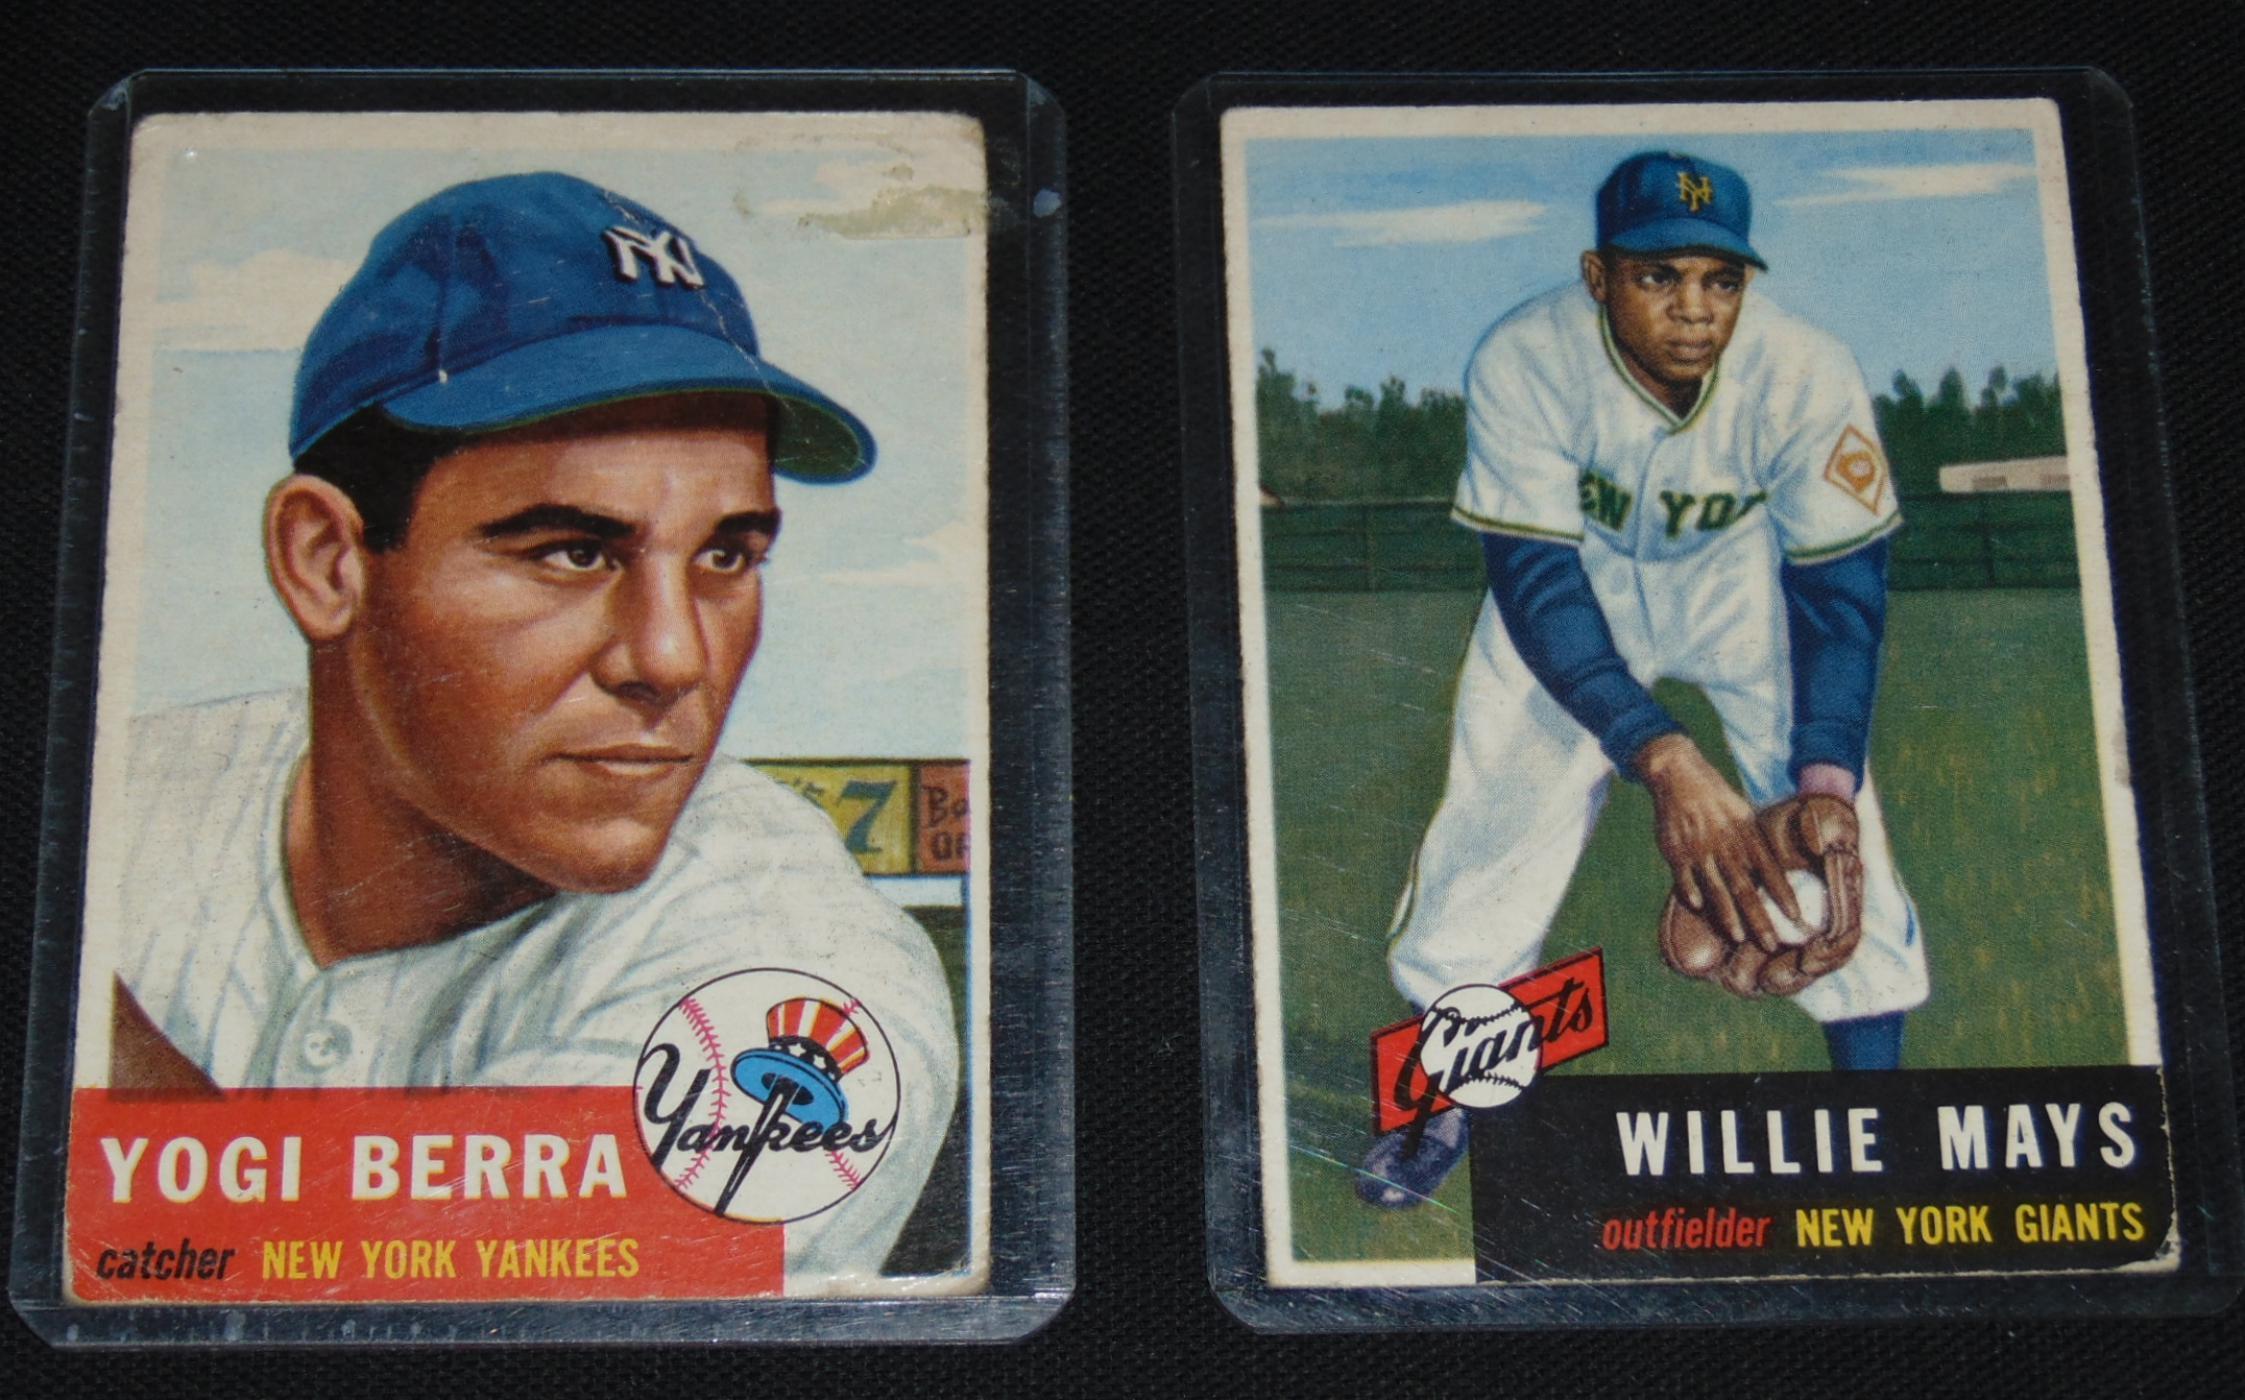 1953 Topps Baseball Card Lot. Stars.